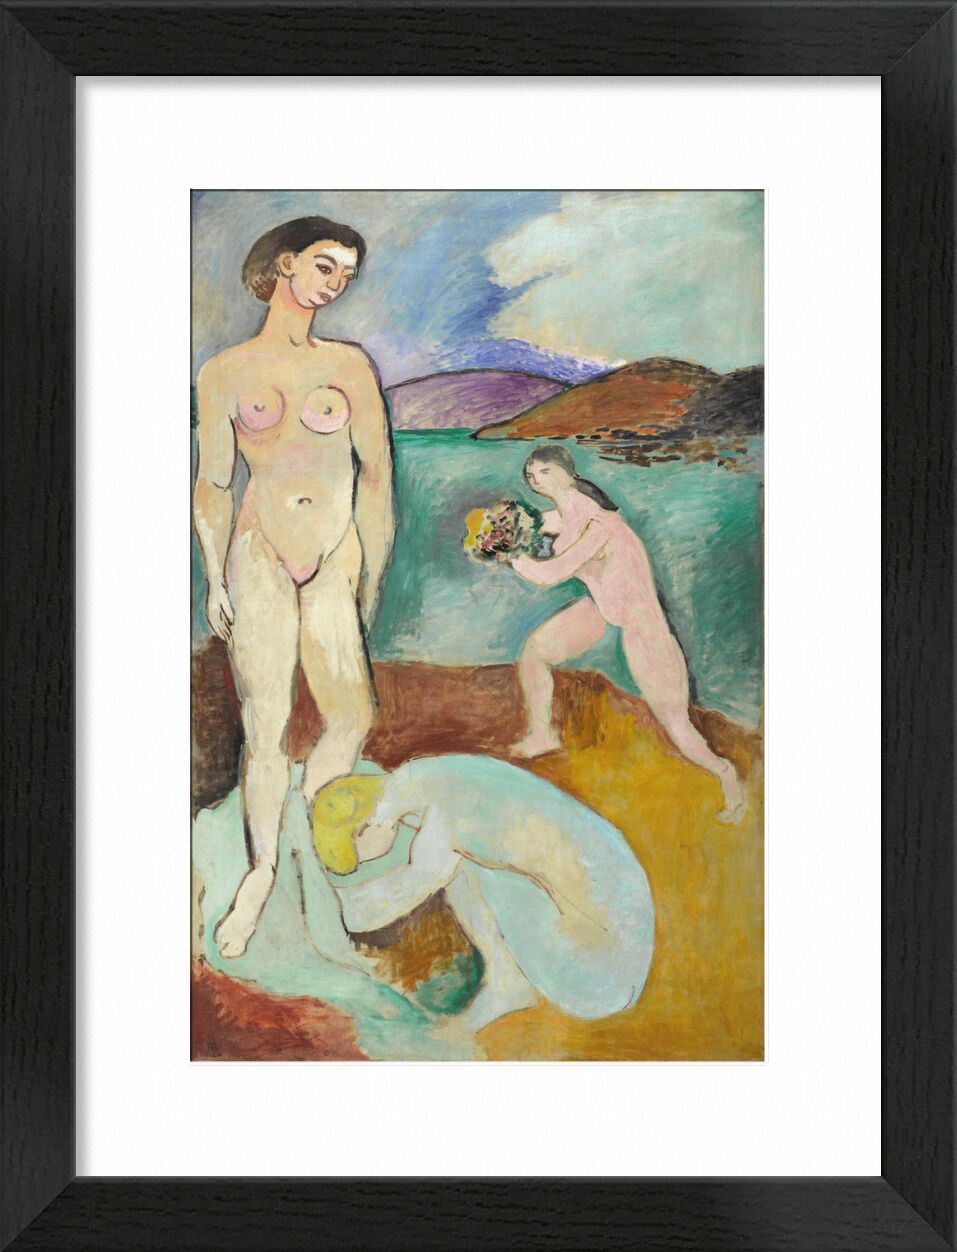 Luxus I - Matisse von Bildende Kunst, Prodi Art, Henri Matisse, Luxus, Frau, Frauen, nackt, See, Landschaft, Matisse